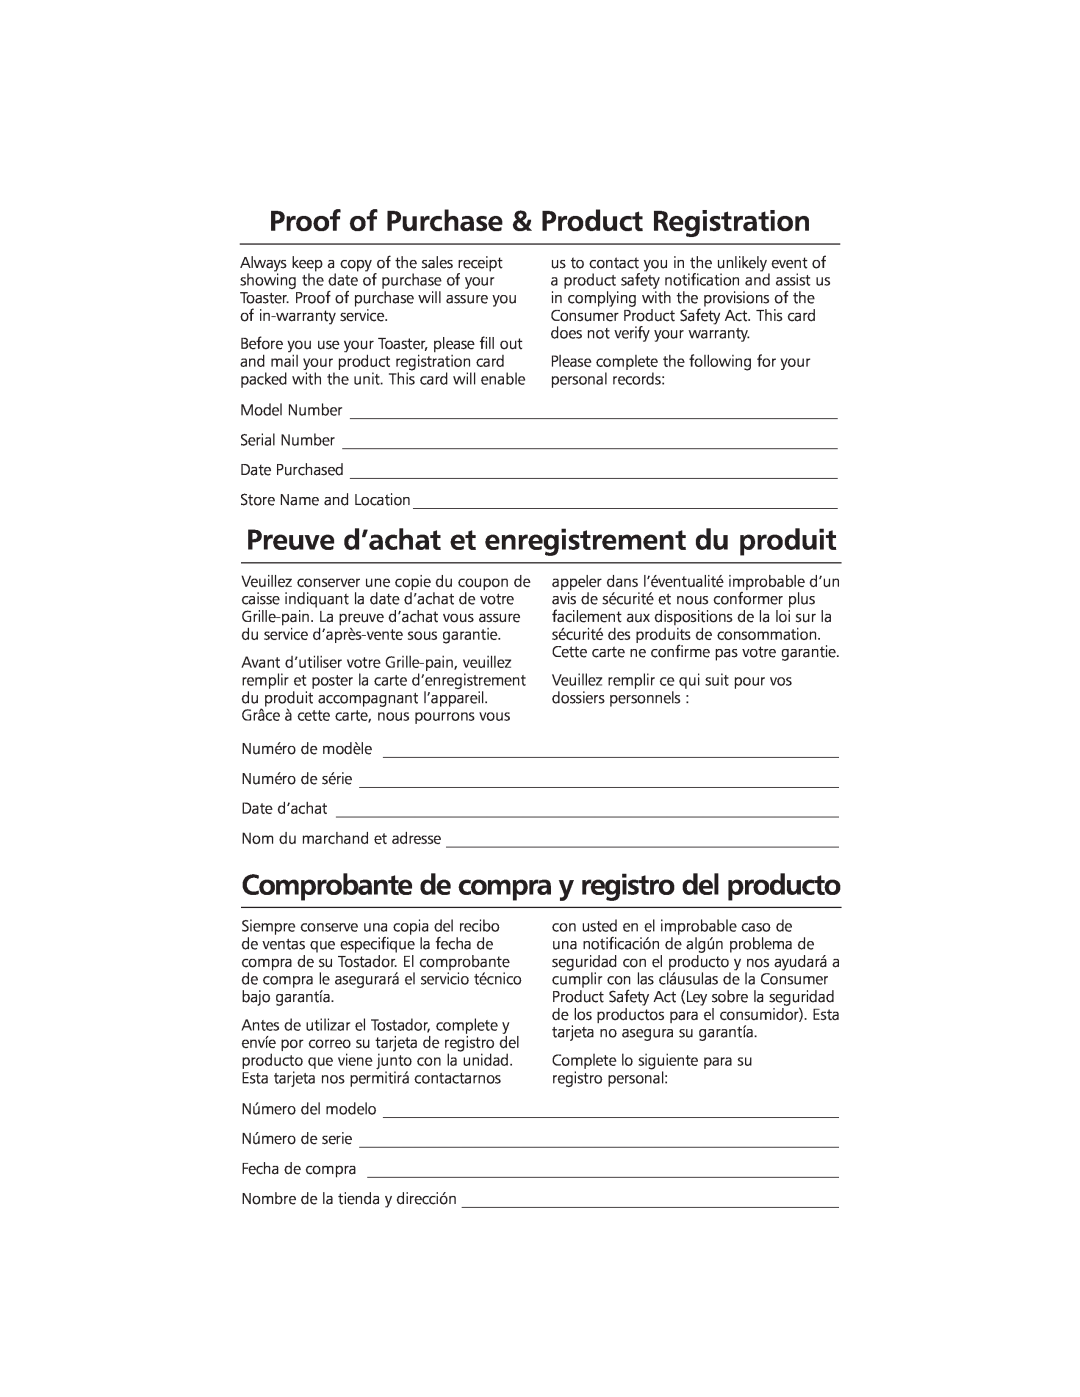 KitchenAid KMTT400 manual Proof of Purchase & Product Registration, Preuve d’achat et enregistrement du produit 